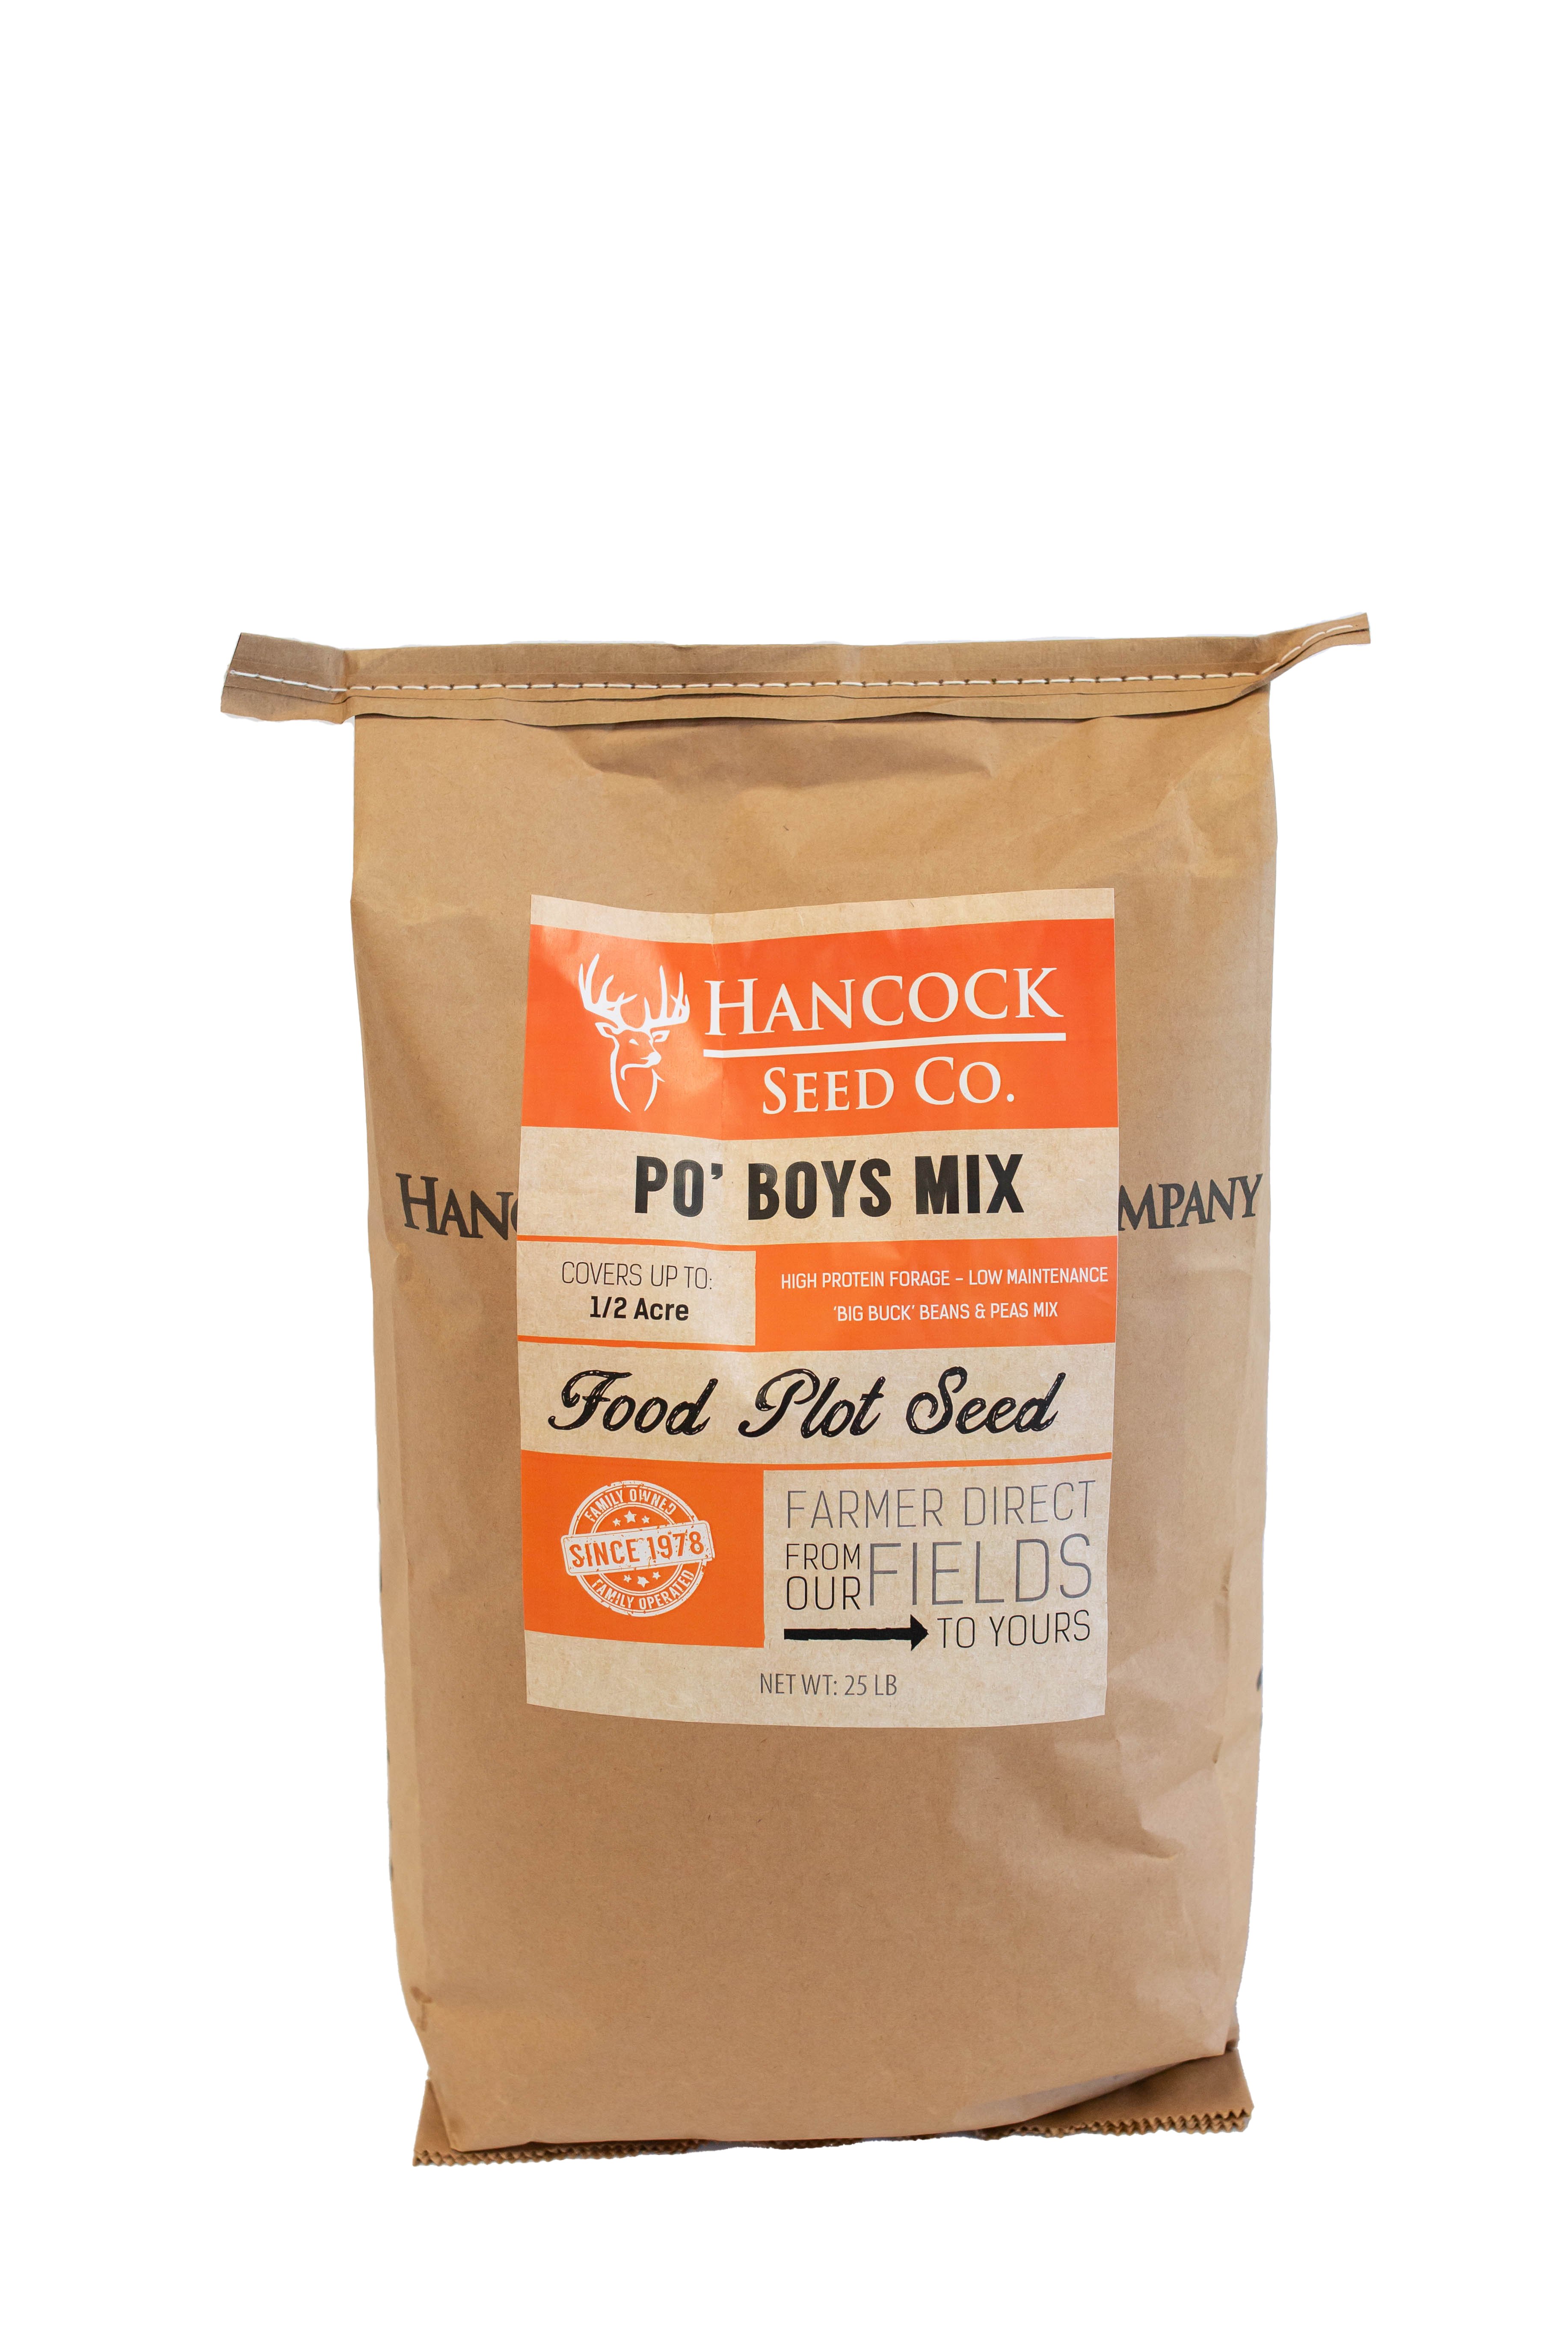 Hancock's Po' Boys Spring & Summer Mix, 25 lb. Bag